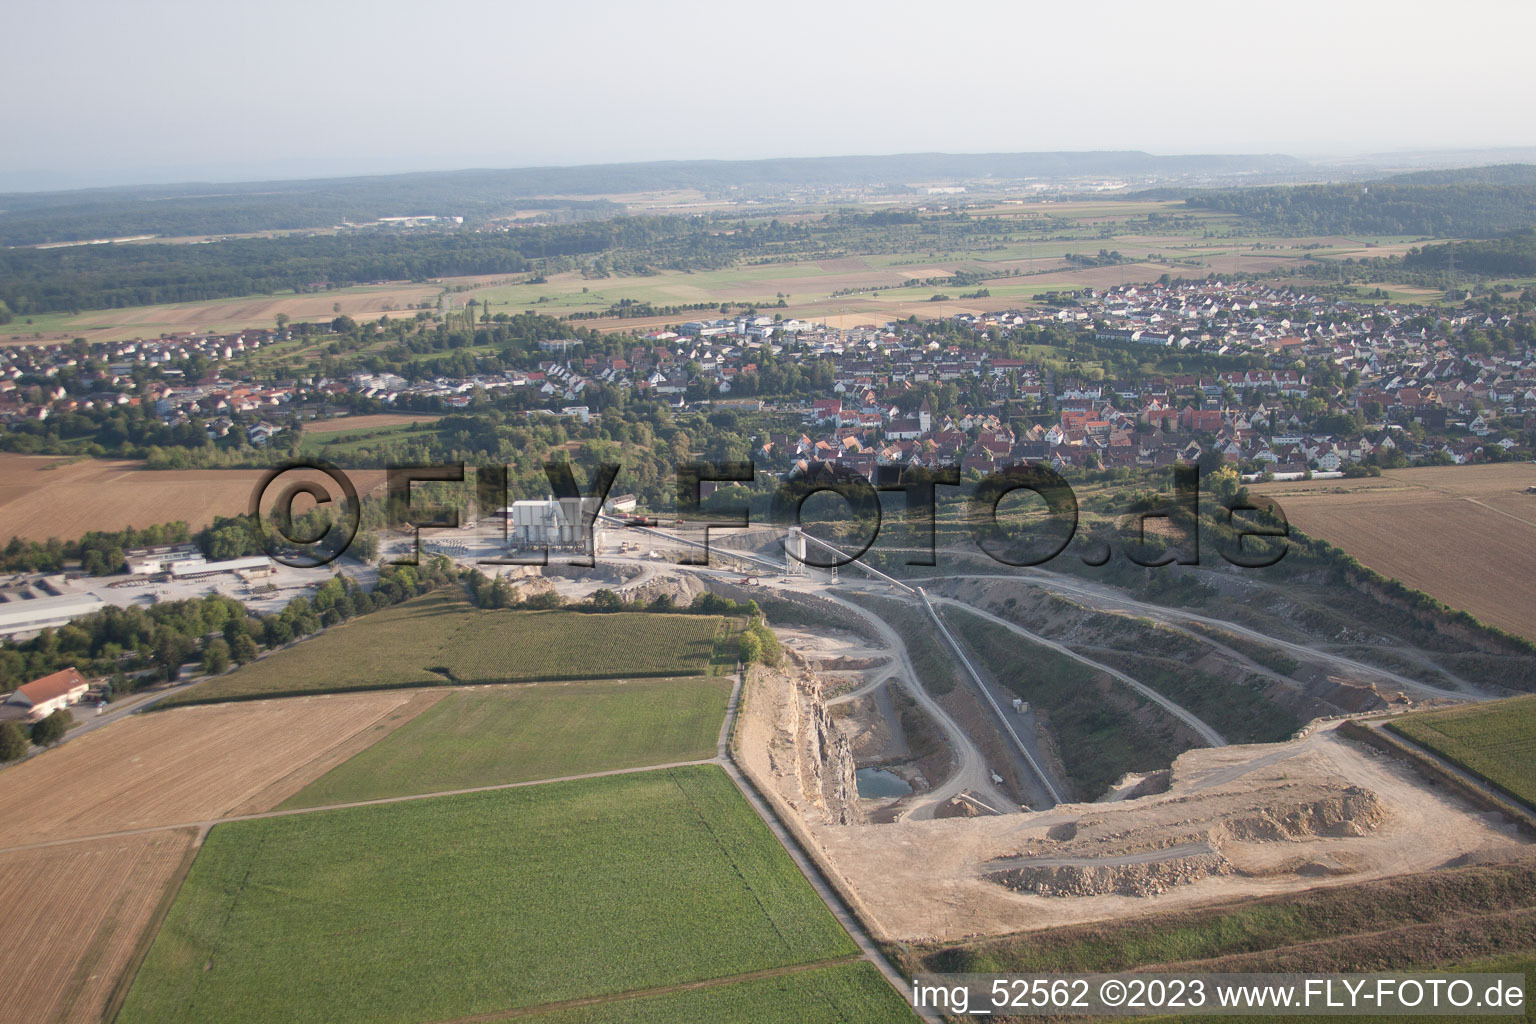 Sindelfingen quarry-Darmsheim in Darmsheim in the state Baden-Wuerttemberg, Germany seen from above